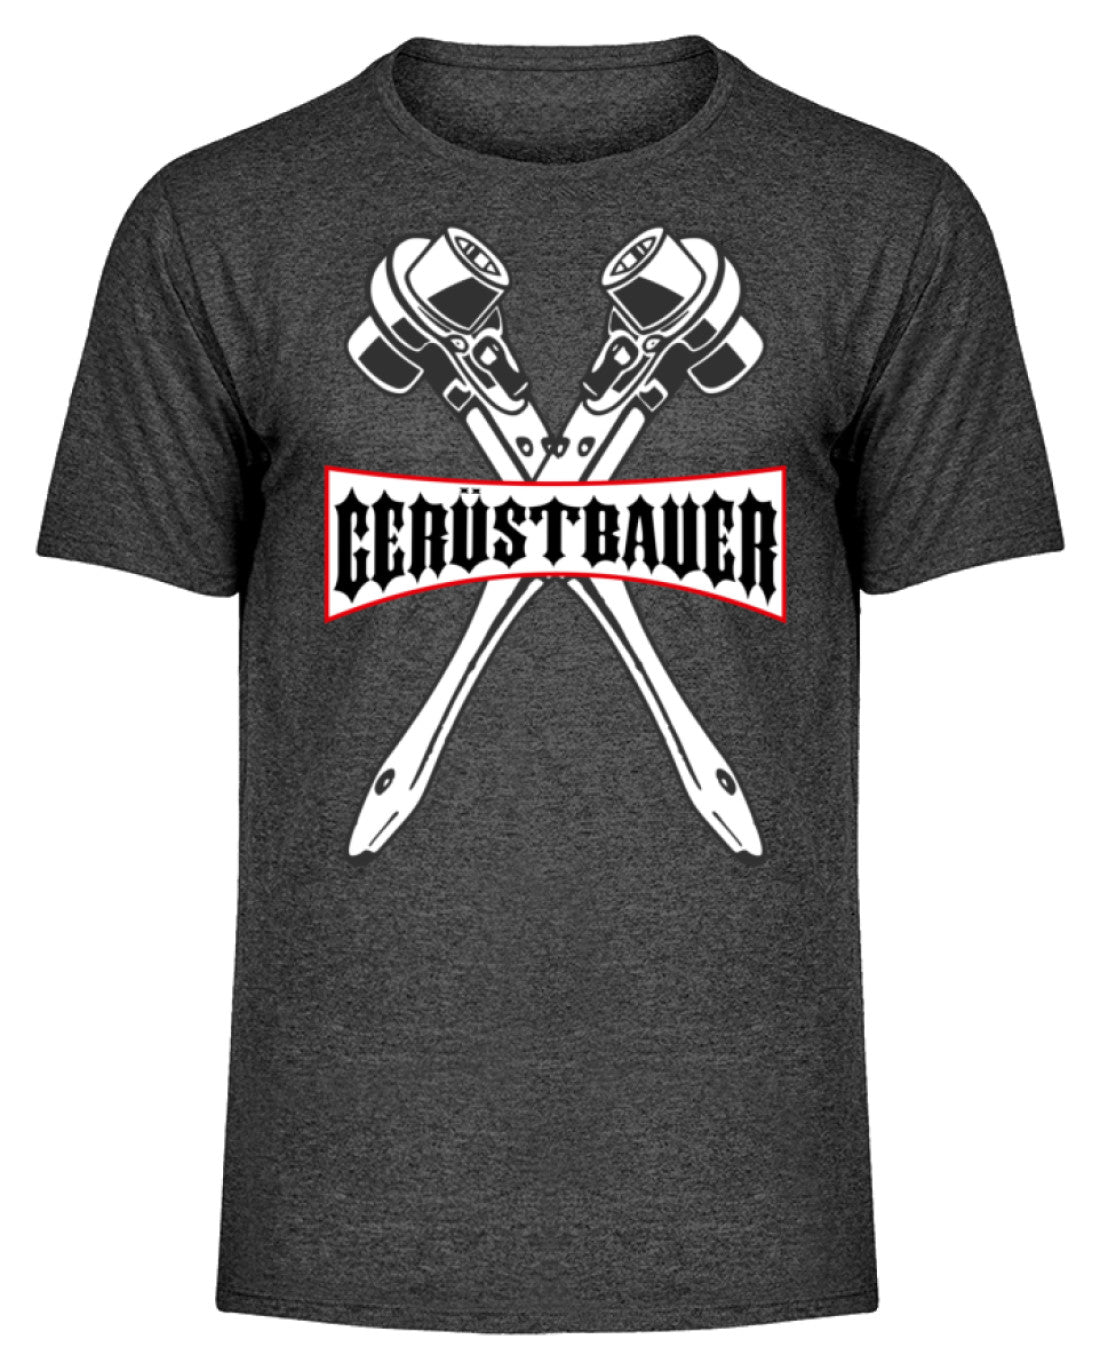 Gerüstbauer  - Herren Melange Shirt €24.95 Gerüstbauer - Shop >>